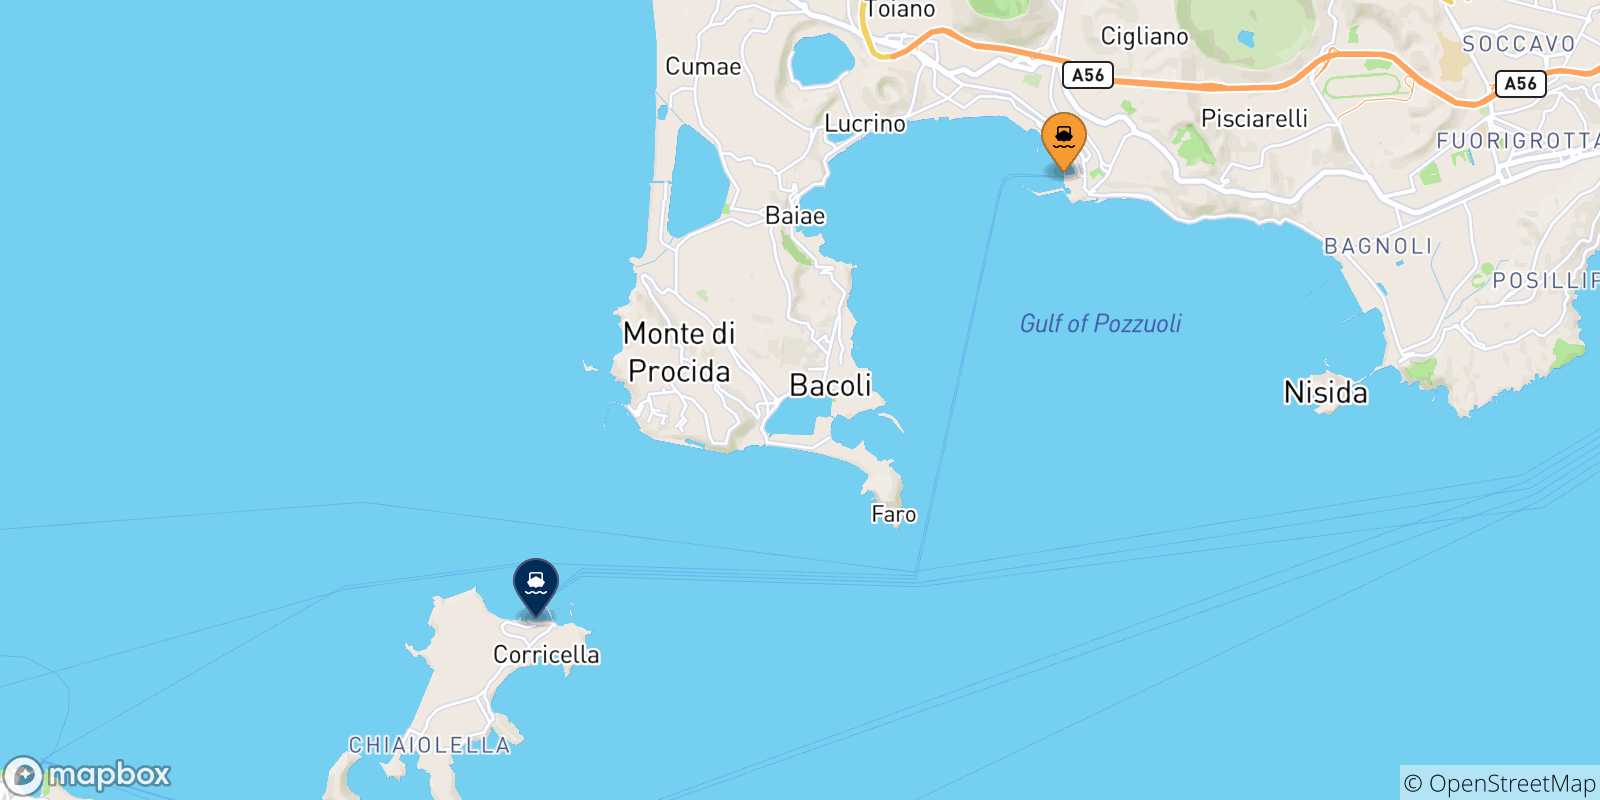 Mappa delle possibili rotte tra Casamicciola (Ischia) e il Golfo Di Napoli